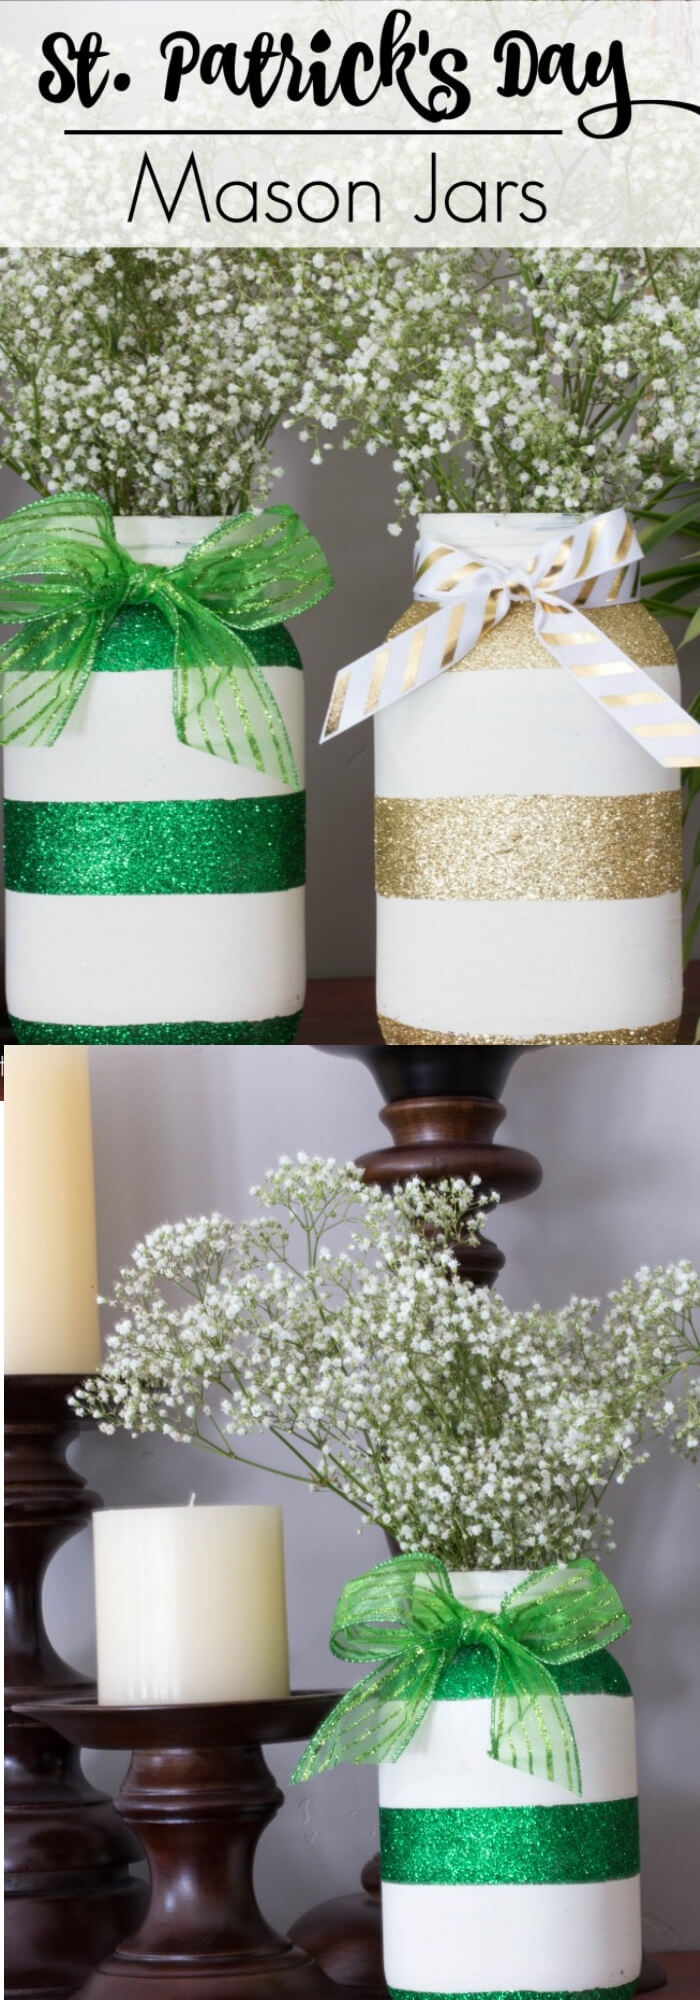 St. Patrick's Day Mason Jars | Creative St. Patrick’s Day Decor Ideas